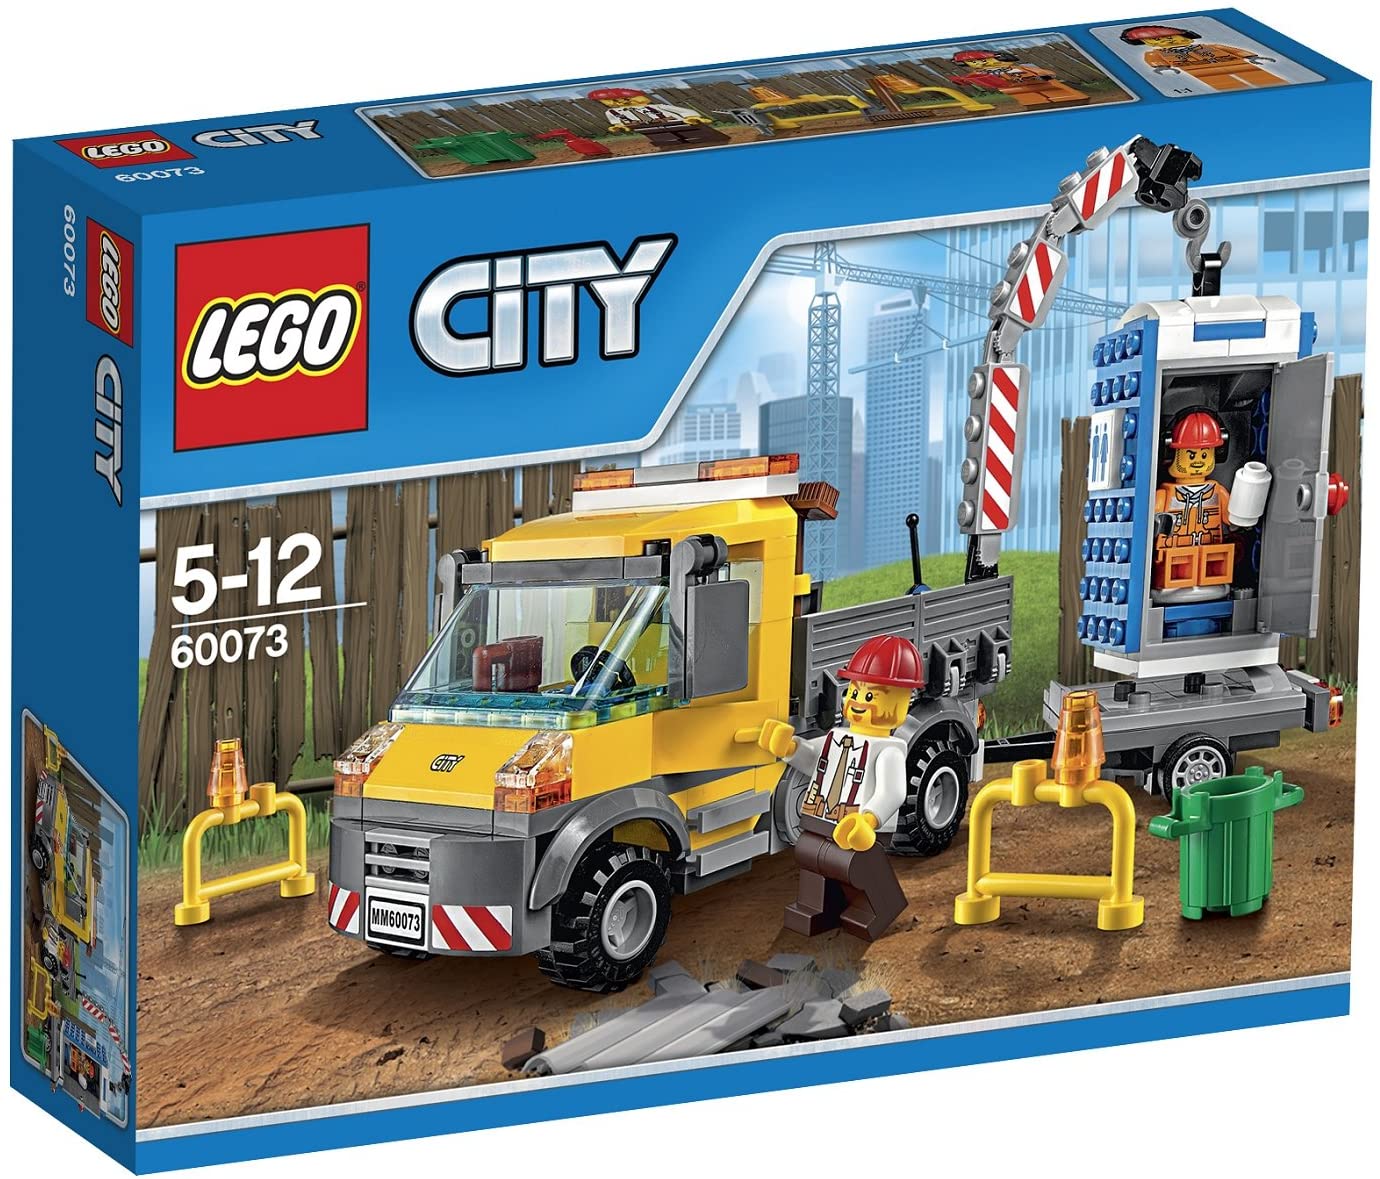 LEGO 樂高 拼插類玩具 City城市系列 工程搬運車 60073